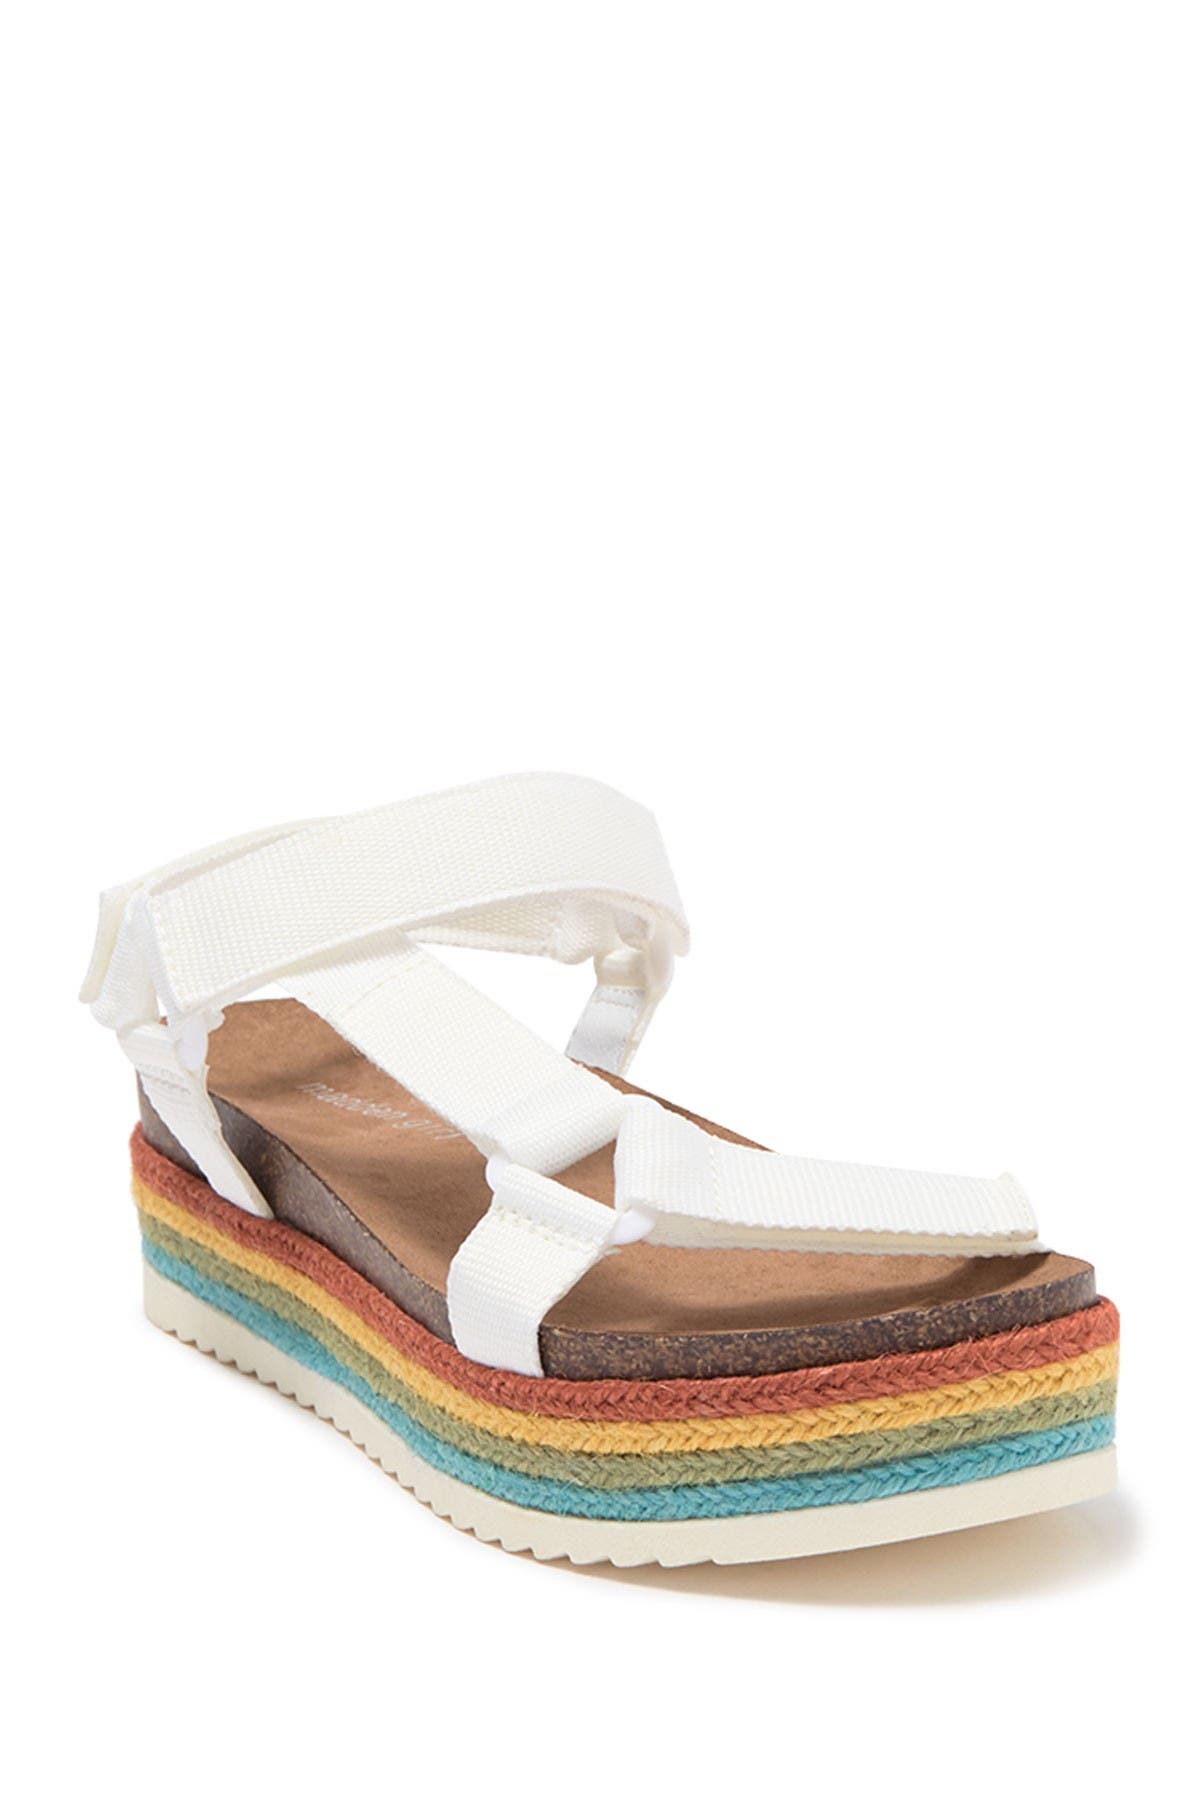 madden girl rainbow platform sandals